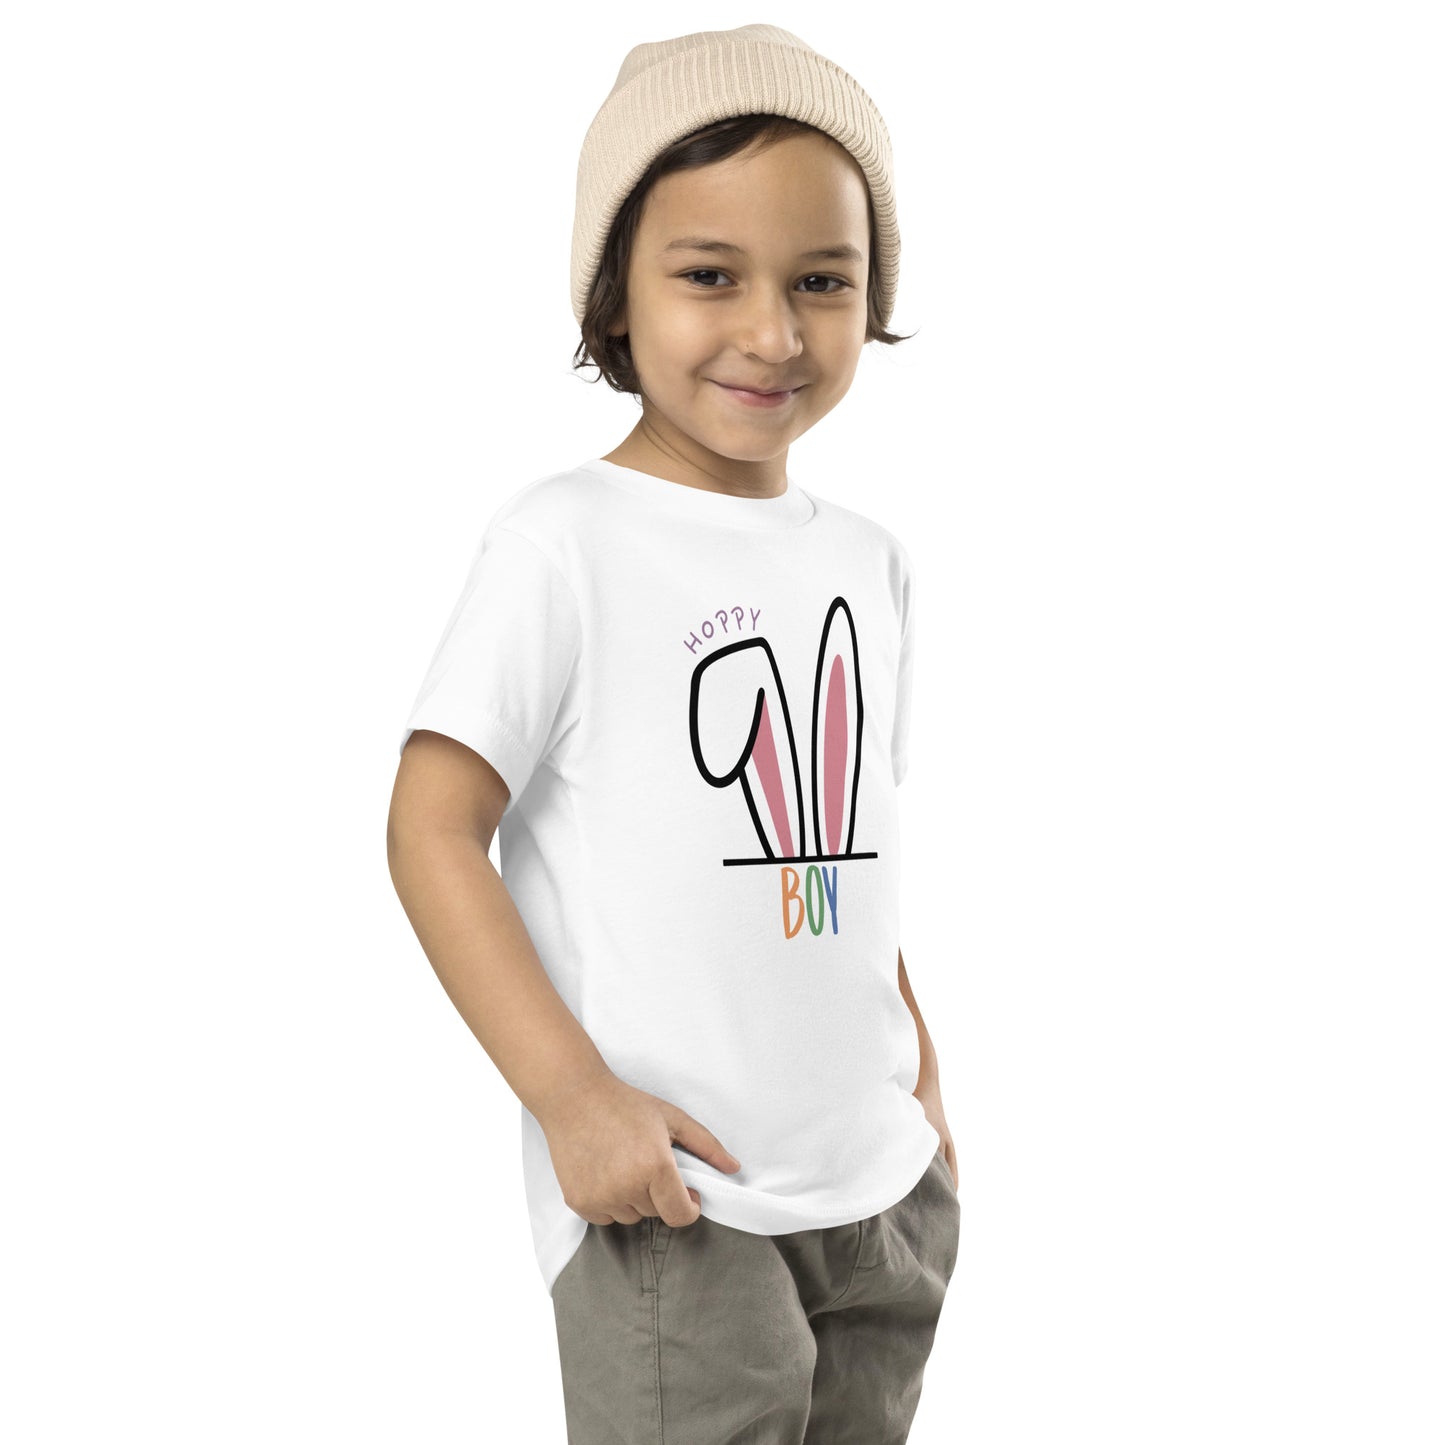 Hoppy Boy Toddler T-shirt